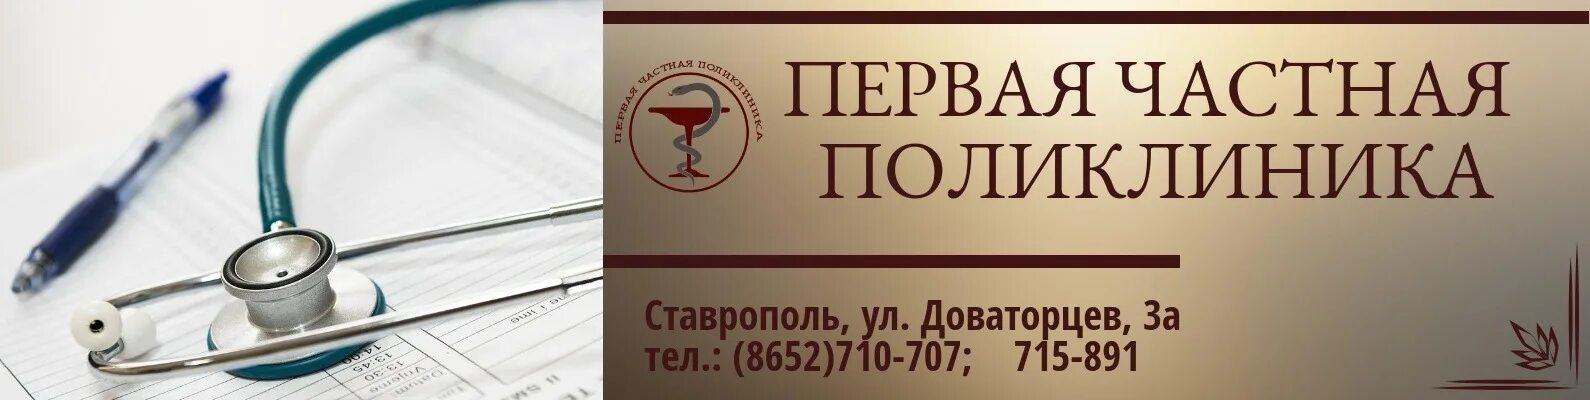 Первая частная поликлиника. Первая частная поликлиника Ставрополь. Поликлиника в Ставрополе Доваторцев. Доваторцев 3а Ставрополь первая частная клиника.